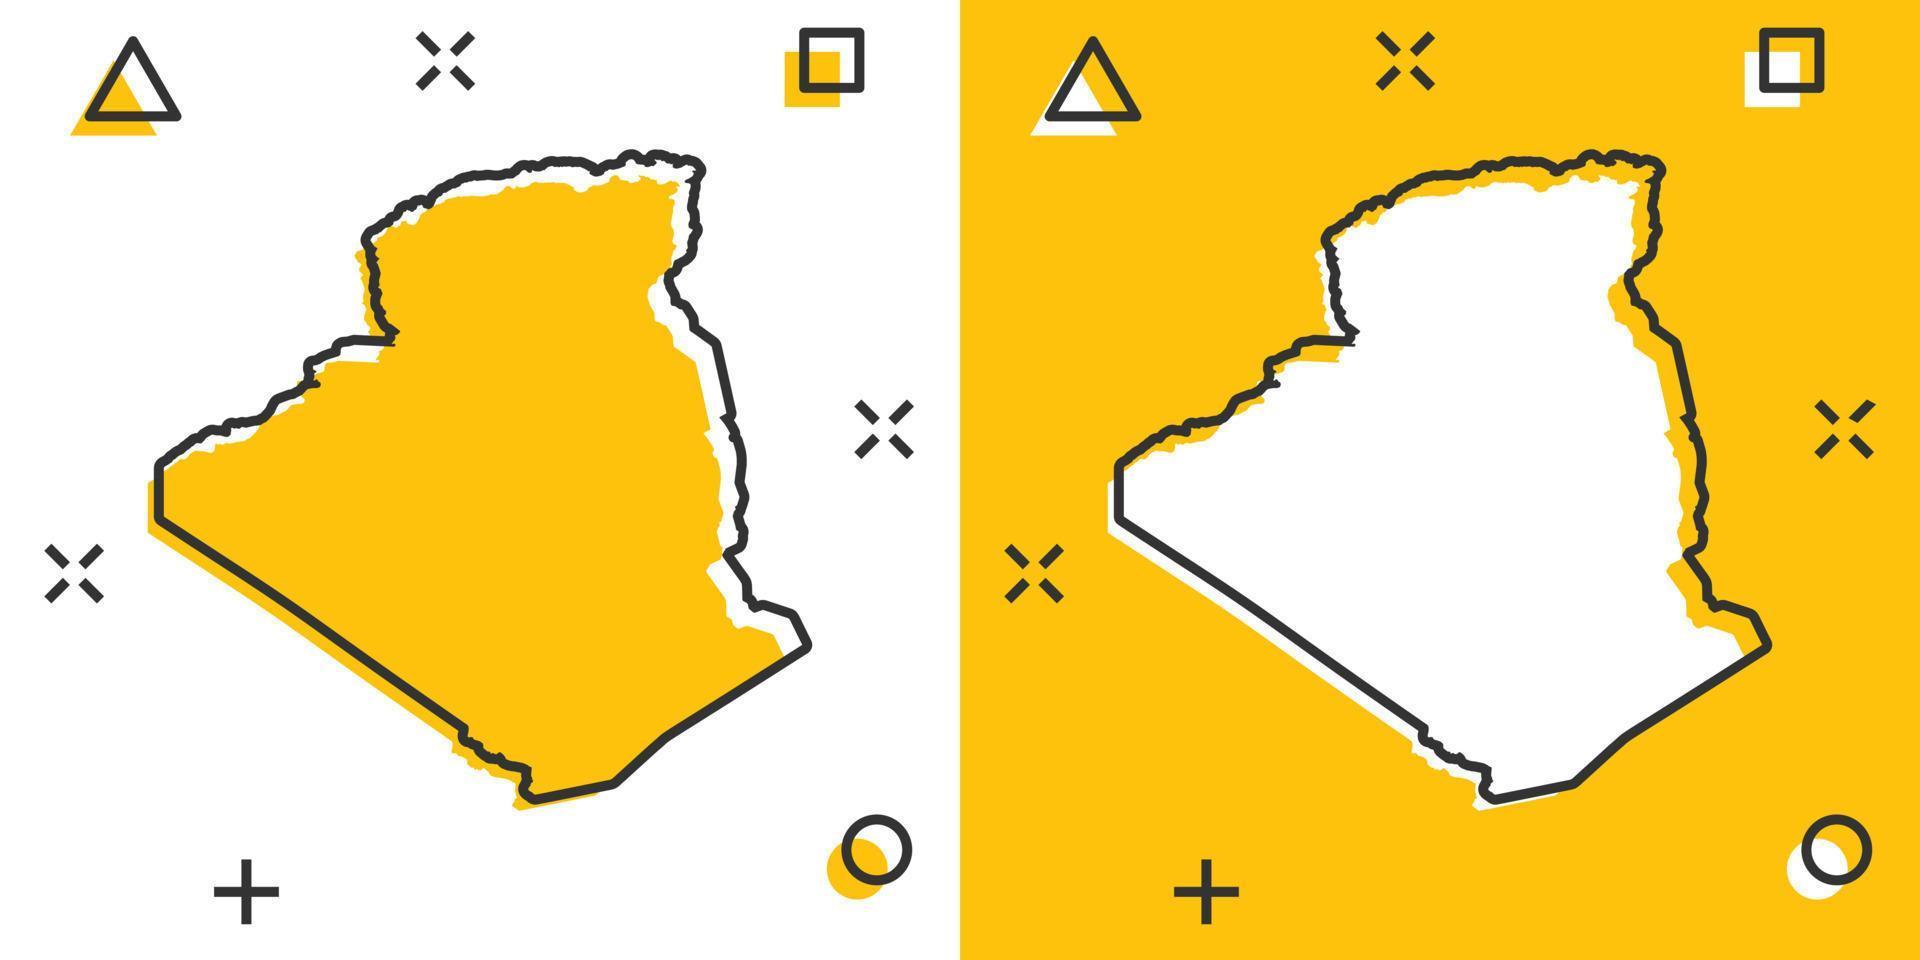 Vektor-Cartoon-Algerien-Kartensymbol im Comic-Stil. Algerien Zeichen Abbildung Piktogramm. Kartografie-Karten-Business-Splash-Effekt-Konzept. vektor